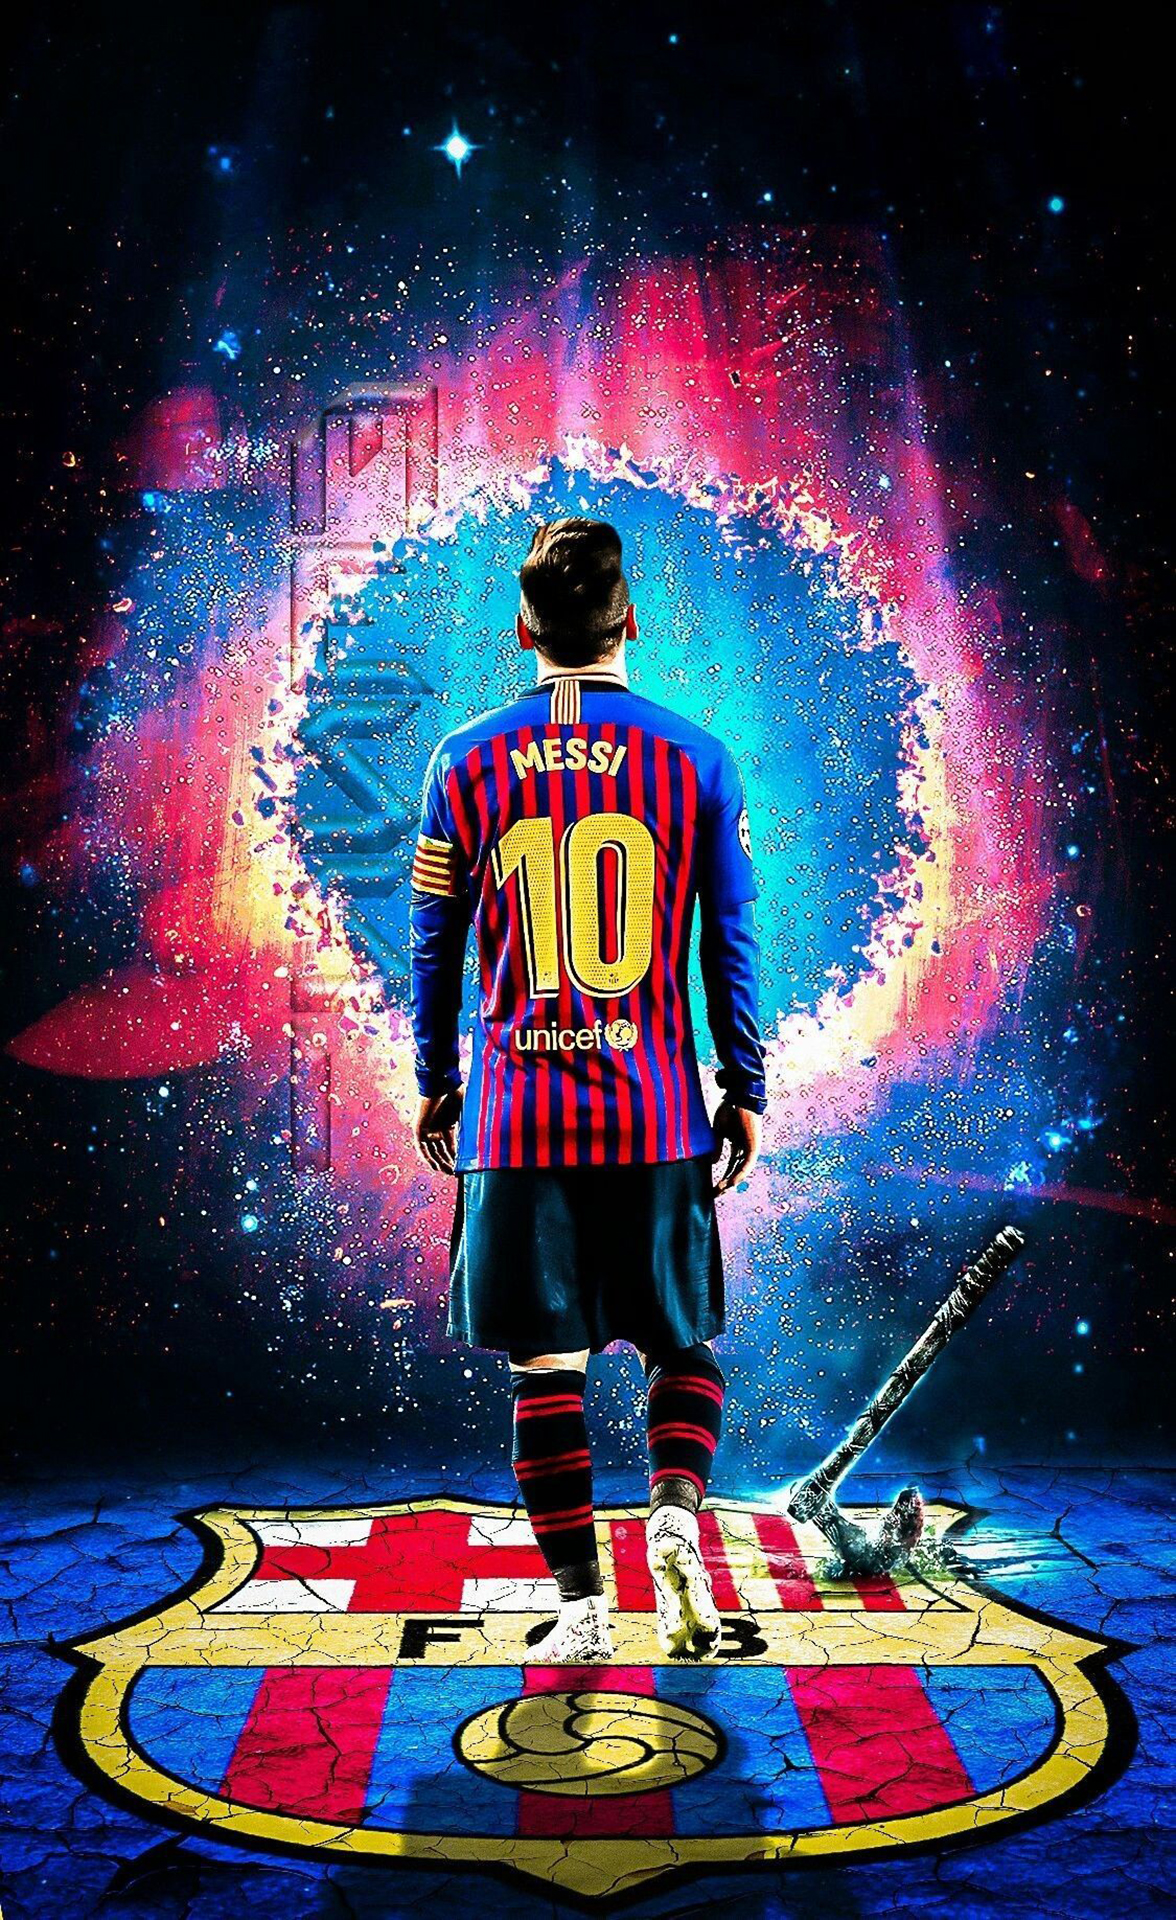 Hình nền Messi 3D sẽ đưa bạn vào một thế giới sống động và khác biệt. Với khả năng tạo hình sai mức nhất định, hình nền này sẽ giúp bạn tận hưởng tinh thần cổ vũ và tin tưởng vào khả năng vượt qua mọi thử thách giống như cách Messi đã thể hiện trên sân cỏ.